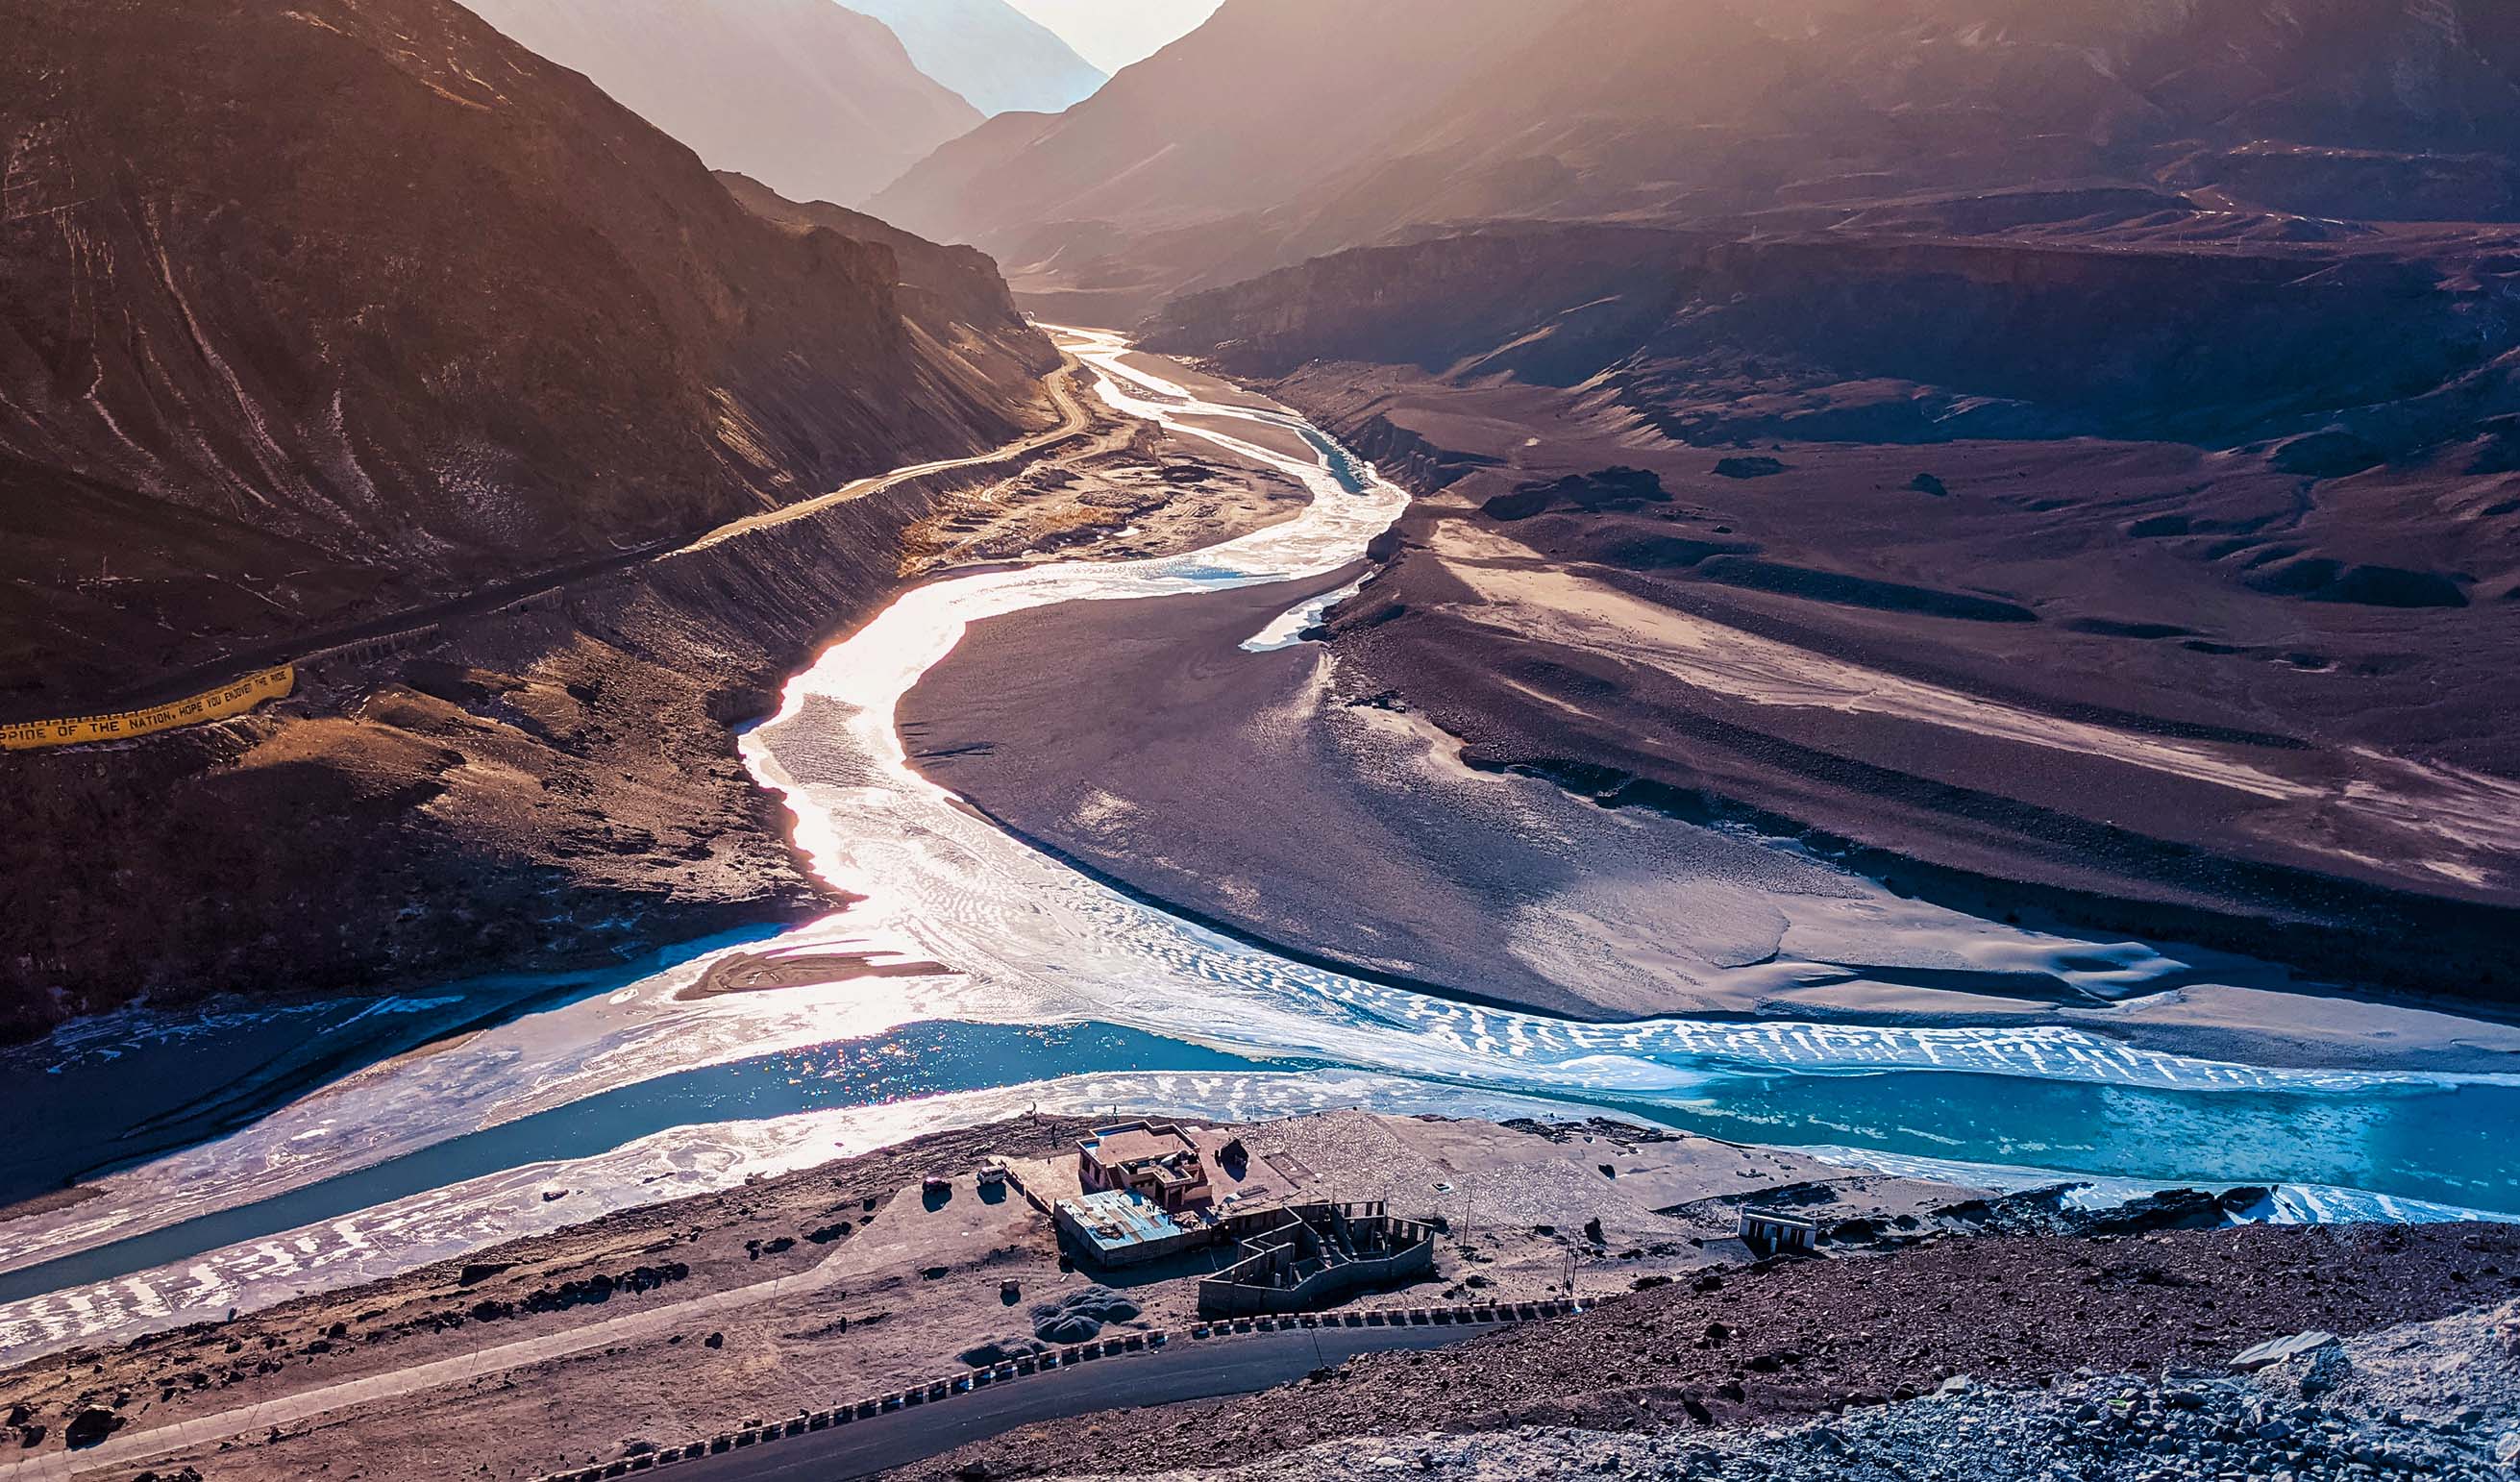 Zanskar River Trek in Leh